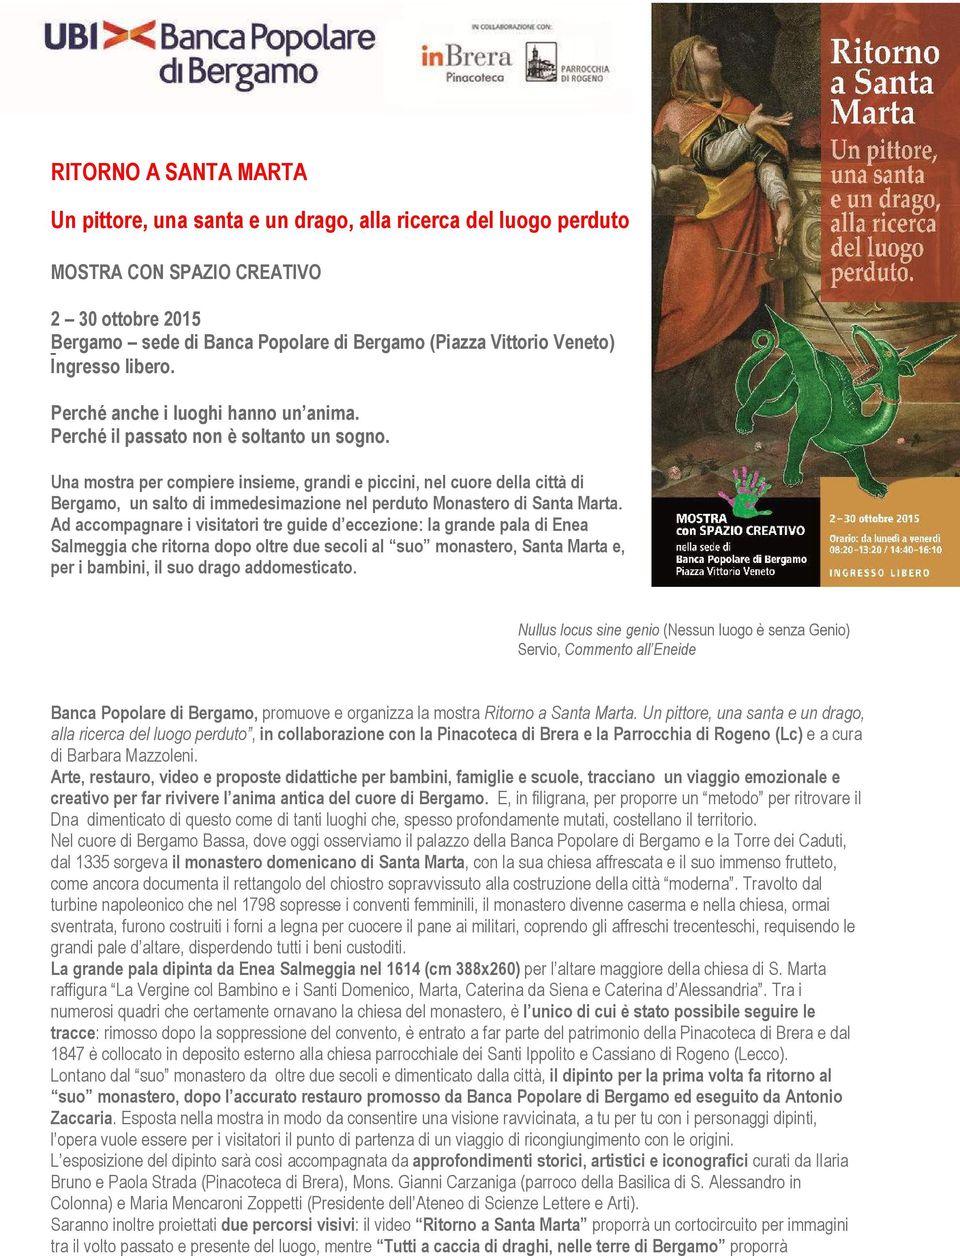 Una mostra per compiere insieme, grandi e piccini, nel cuore della città di Bergamo, un salto di immedesimazione nel perduto Monastero di Santa Marta.